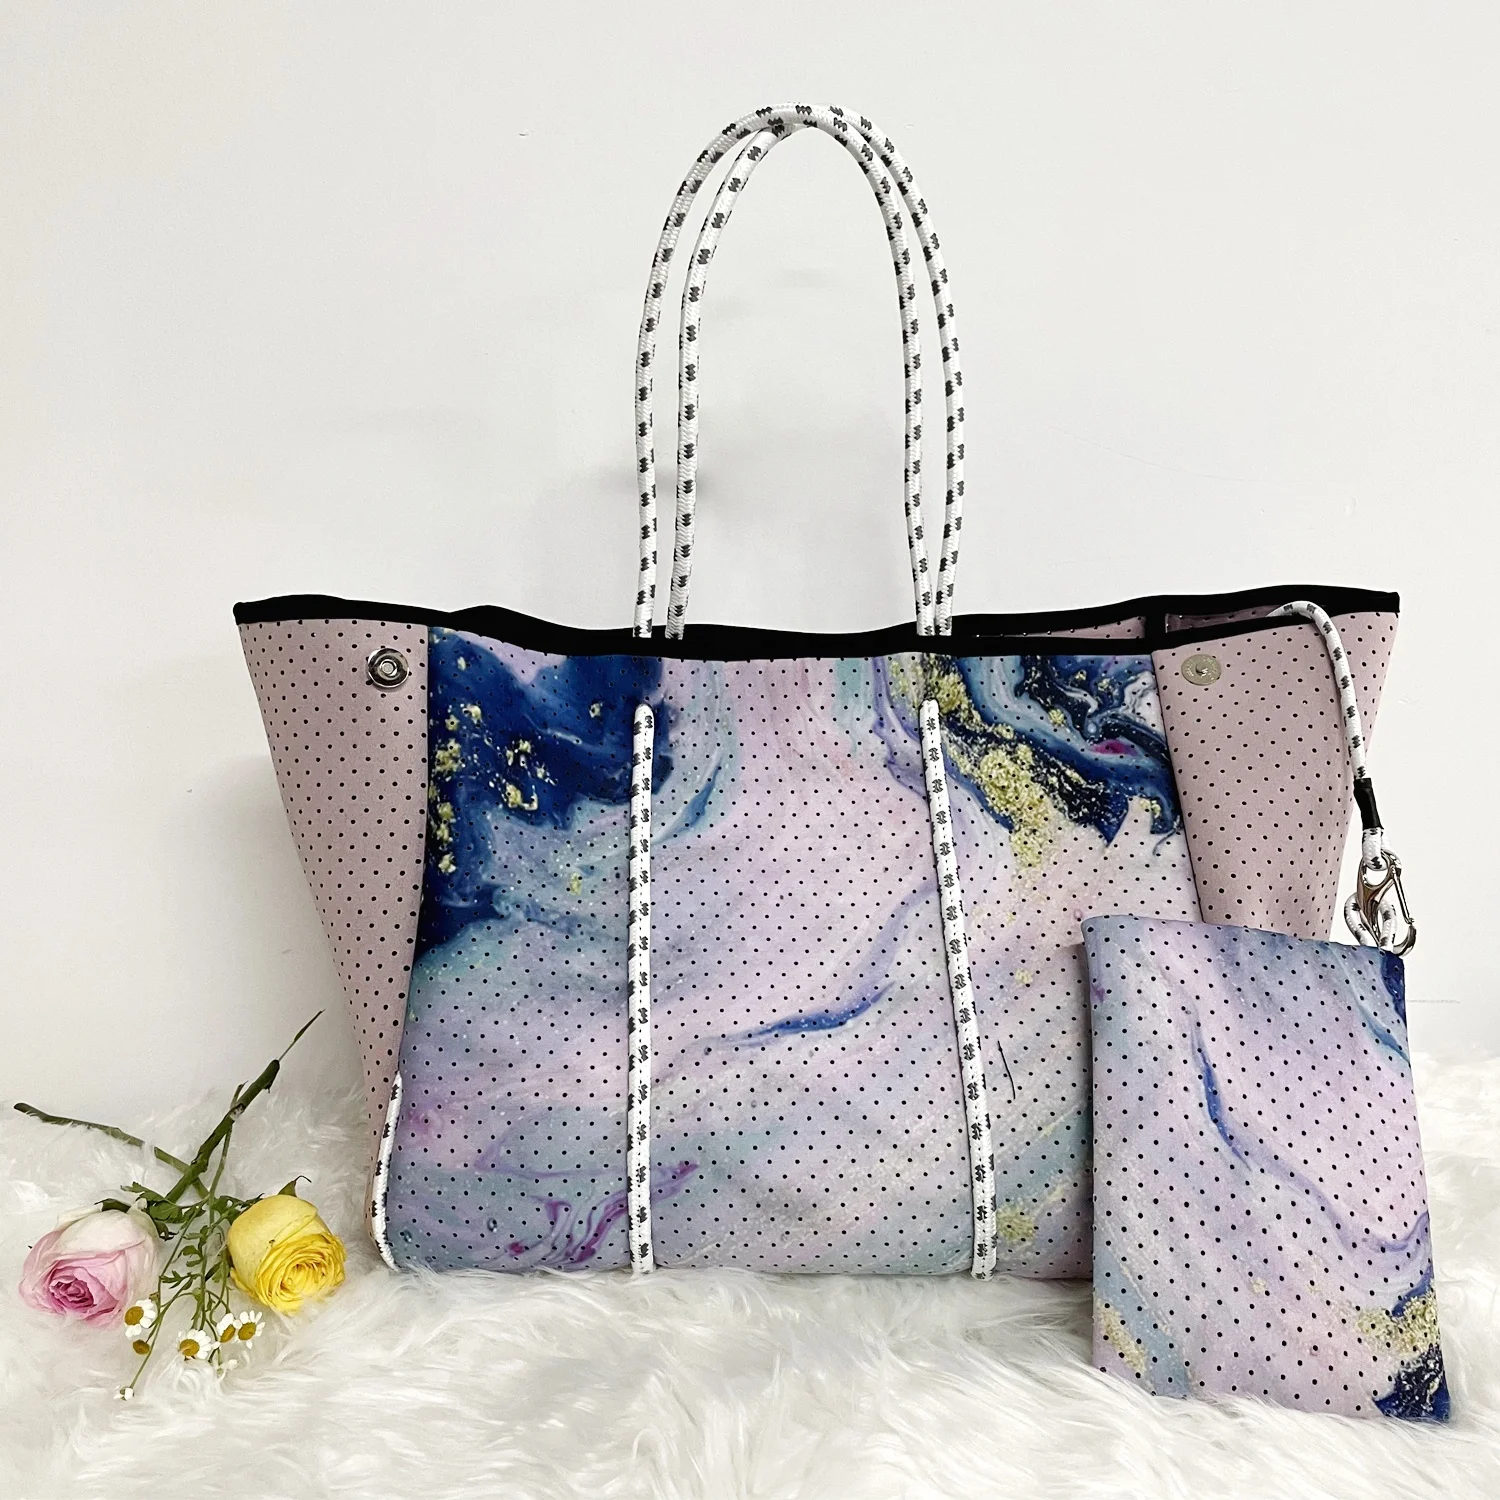 

2021 Hot selling perforated neoprene bag beach bag tote handbag bags for women